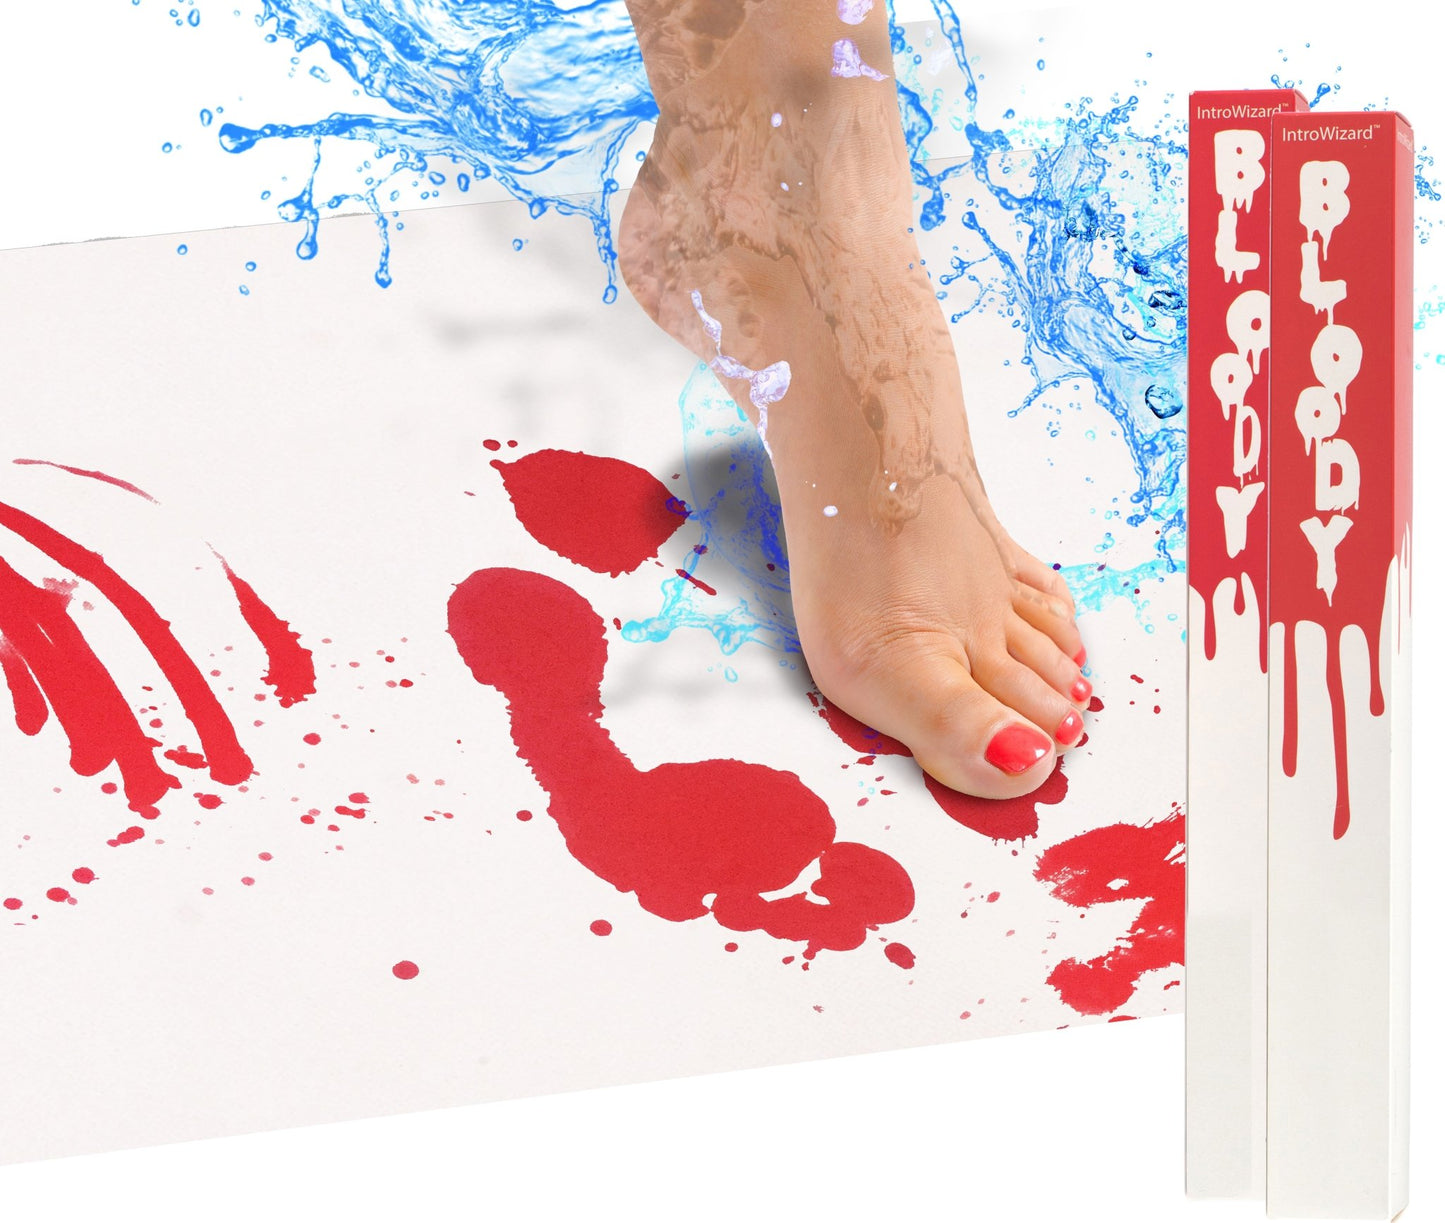 Кровавый коврик® - Bloody Bath Mat®